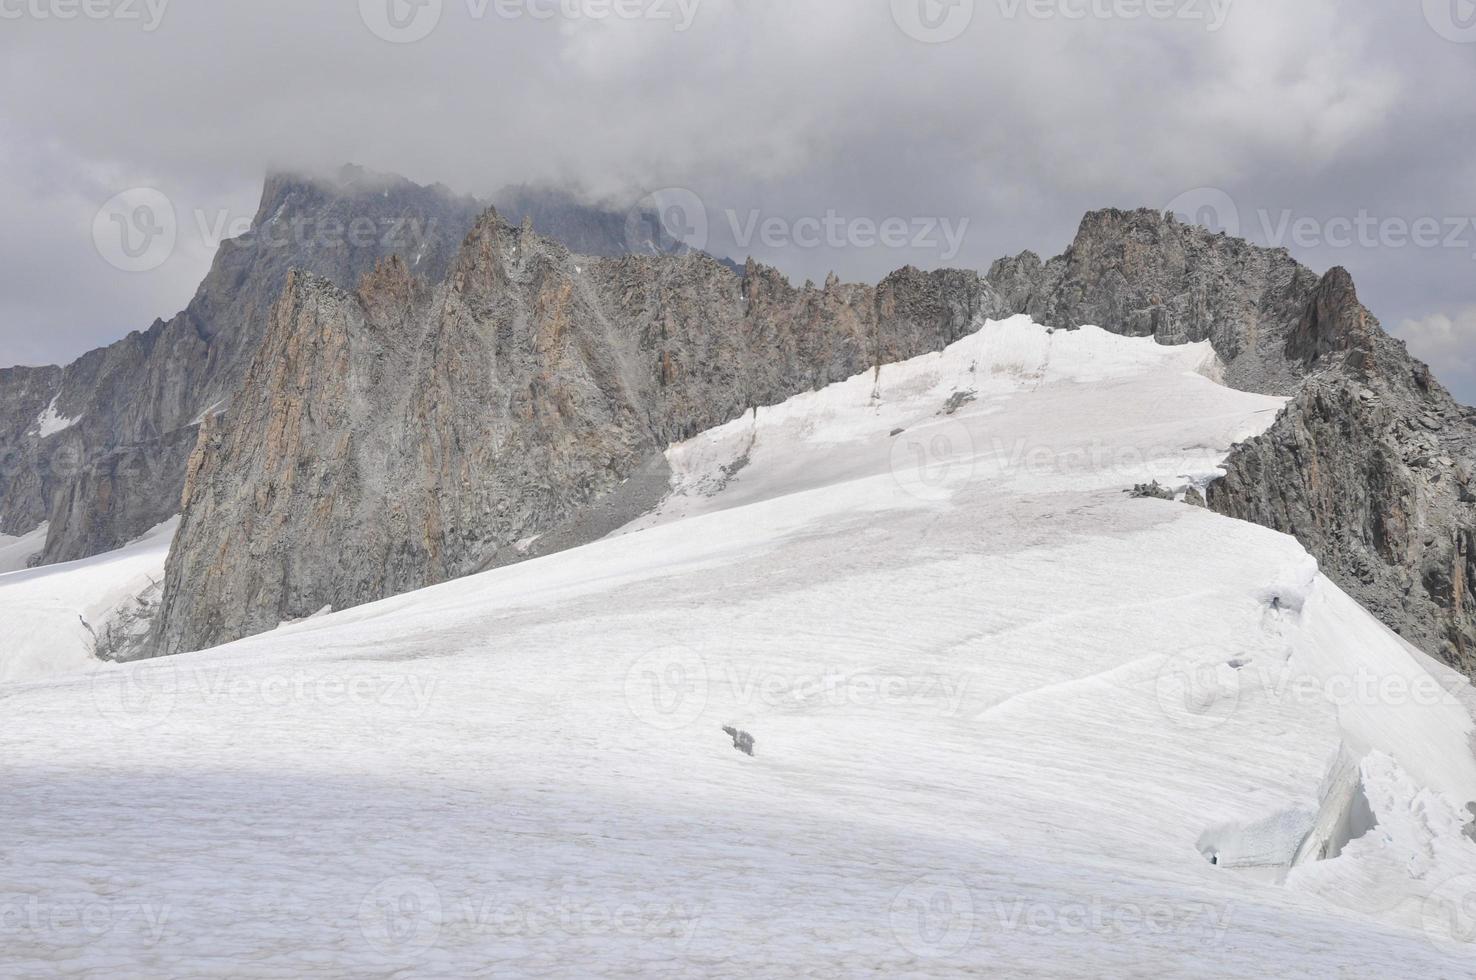 Mont Blanc in Aosta Valley photo